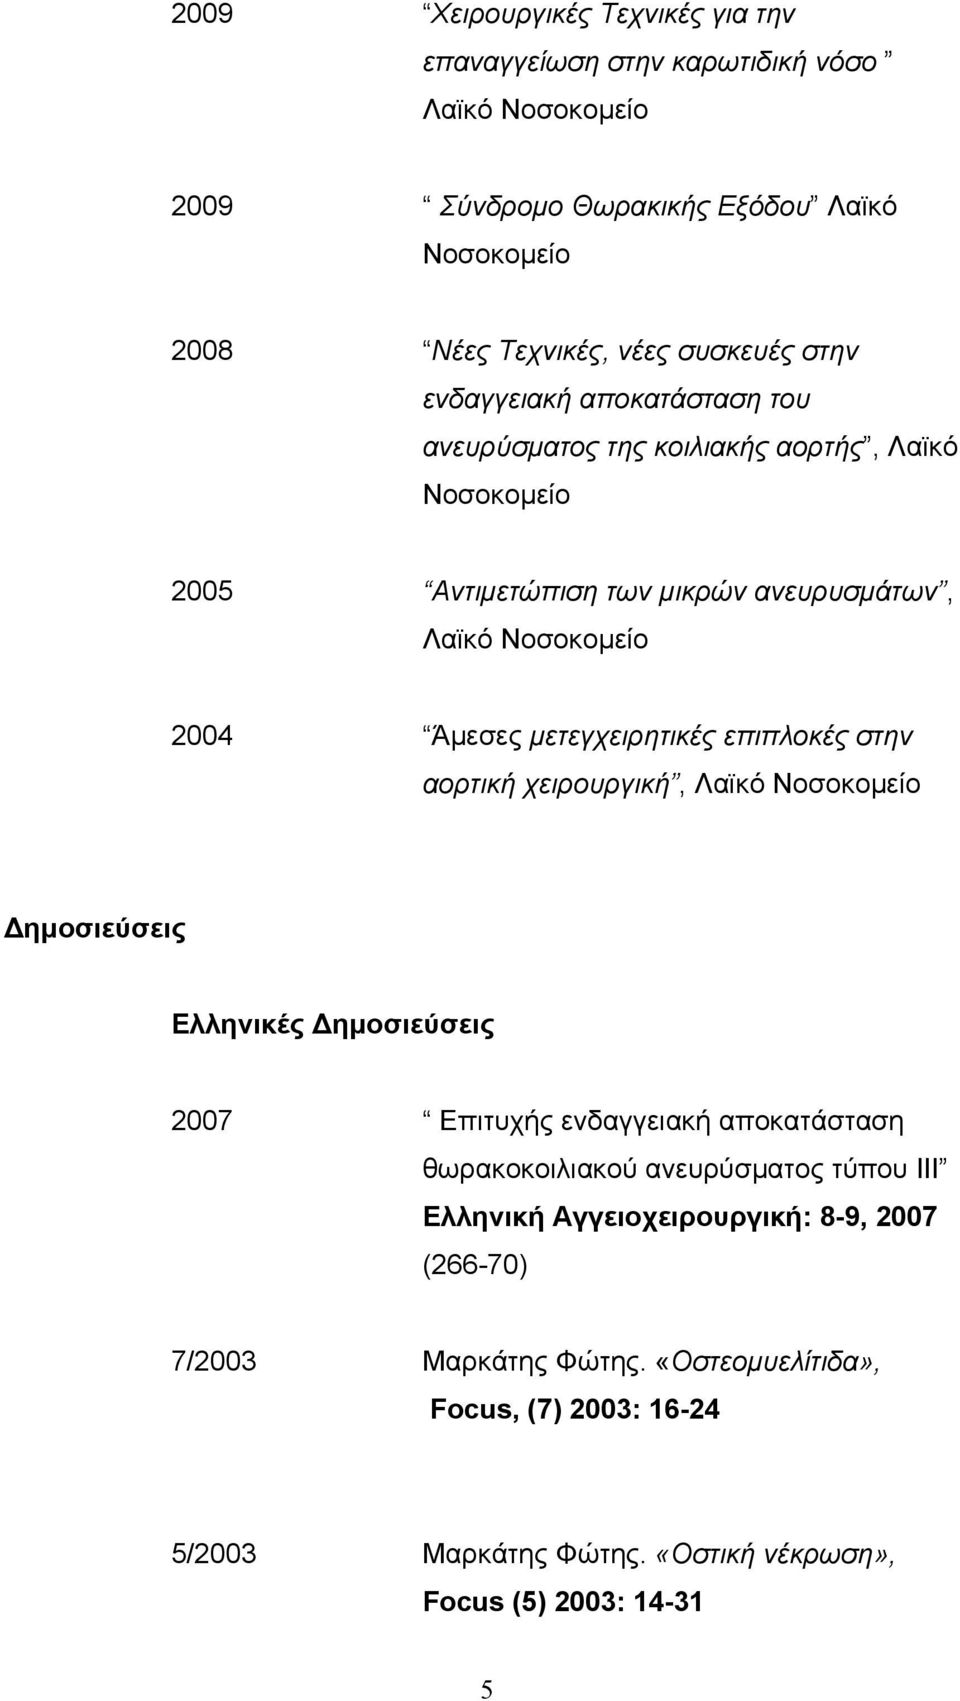 µετεγχειρητικές επιπλοκές στην αορτική χειρουργική, Λαϊκό Νοσοκοµείο Δηµοσιεύσεις Ελληνικές Δηµοσιεύσεις 2007 Eπιτυχής ενδαγγειακή αποκατάσταση θωρακοκοιλιακού